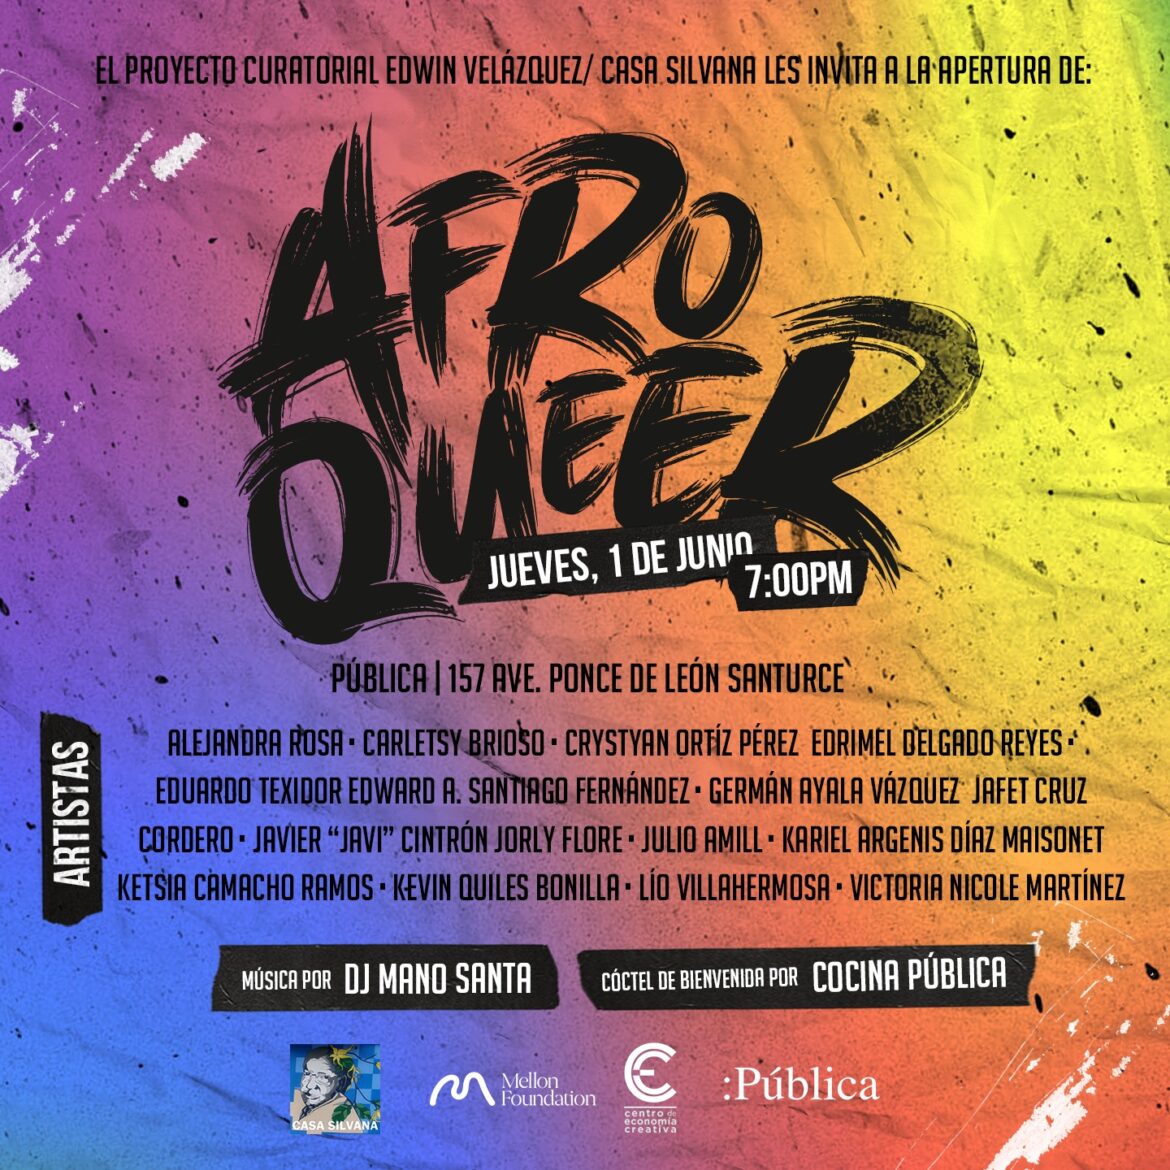 “AFRO CUIR” colectiva de artistas afropuertorriqueños LGBTQ+ en PÚBLICA